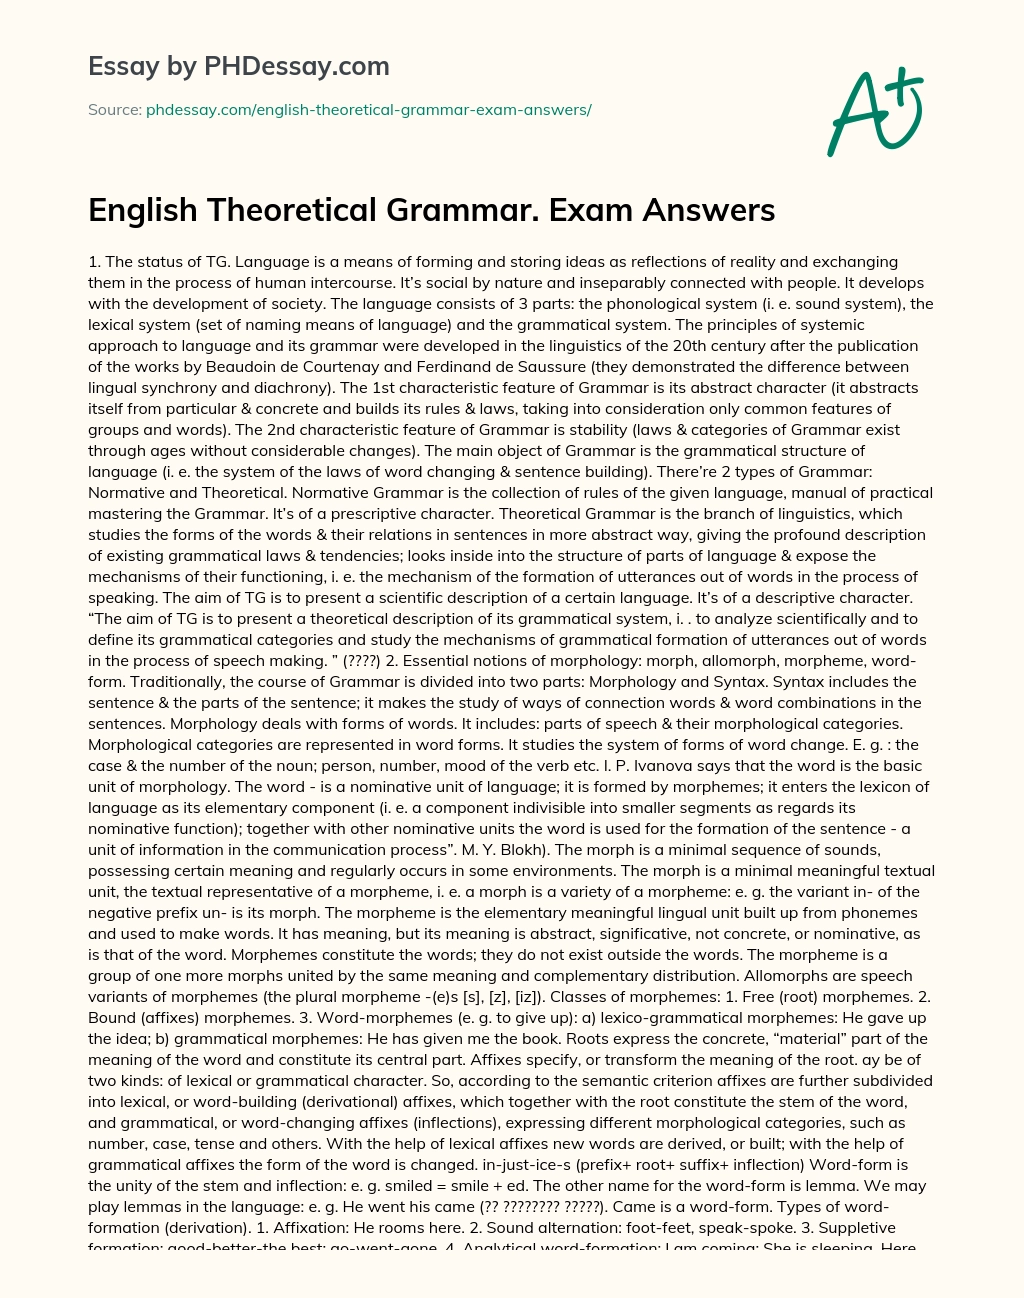 English Theoretical Grammar essay